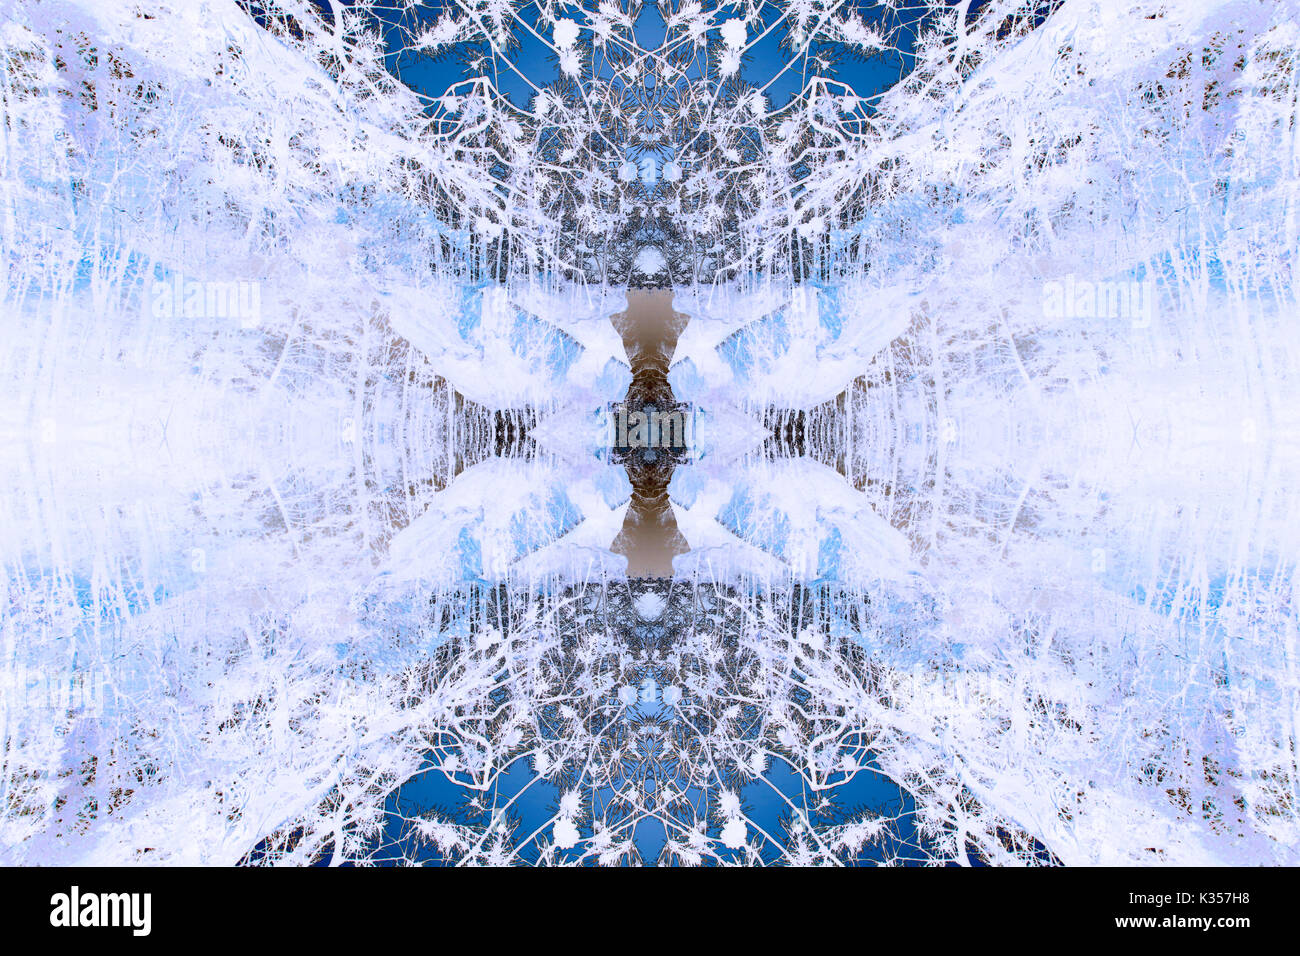 Eine kühle Farben traumhafte Abstract Background Image. Stockfoto